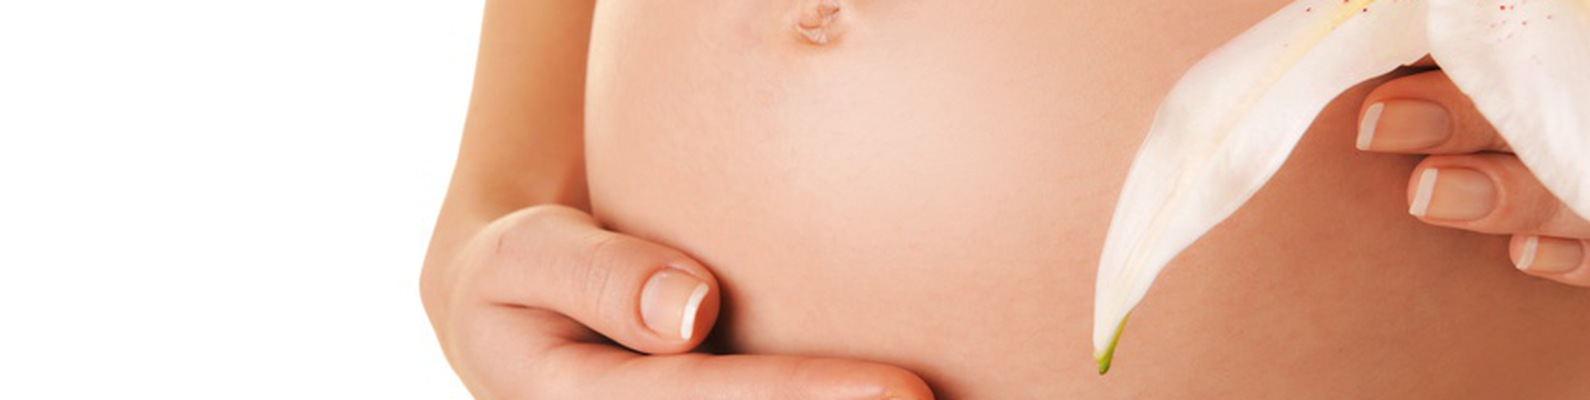 Депиляция и беременность – вопросы и ответы